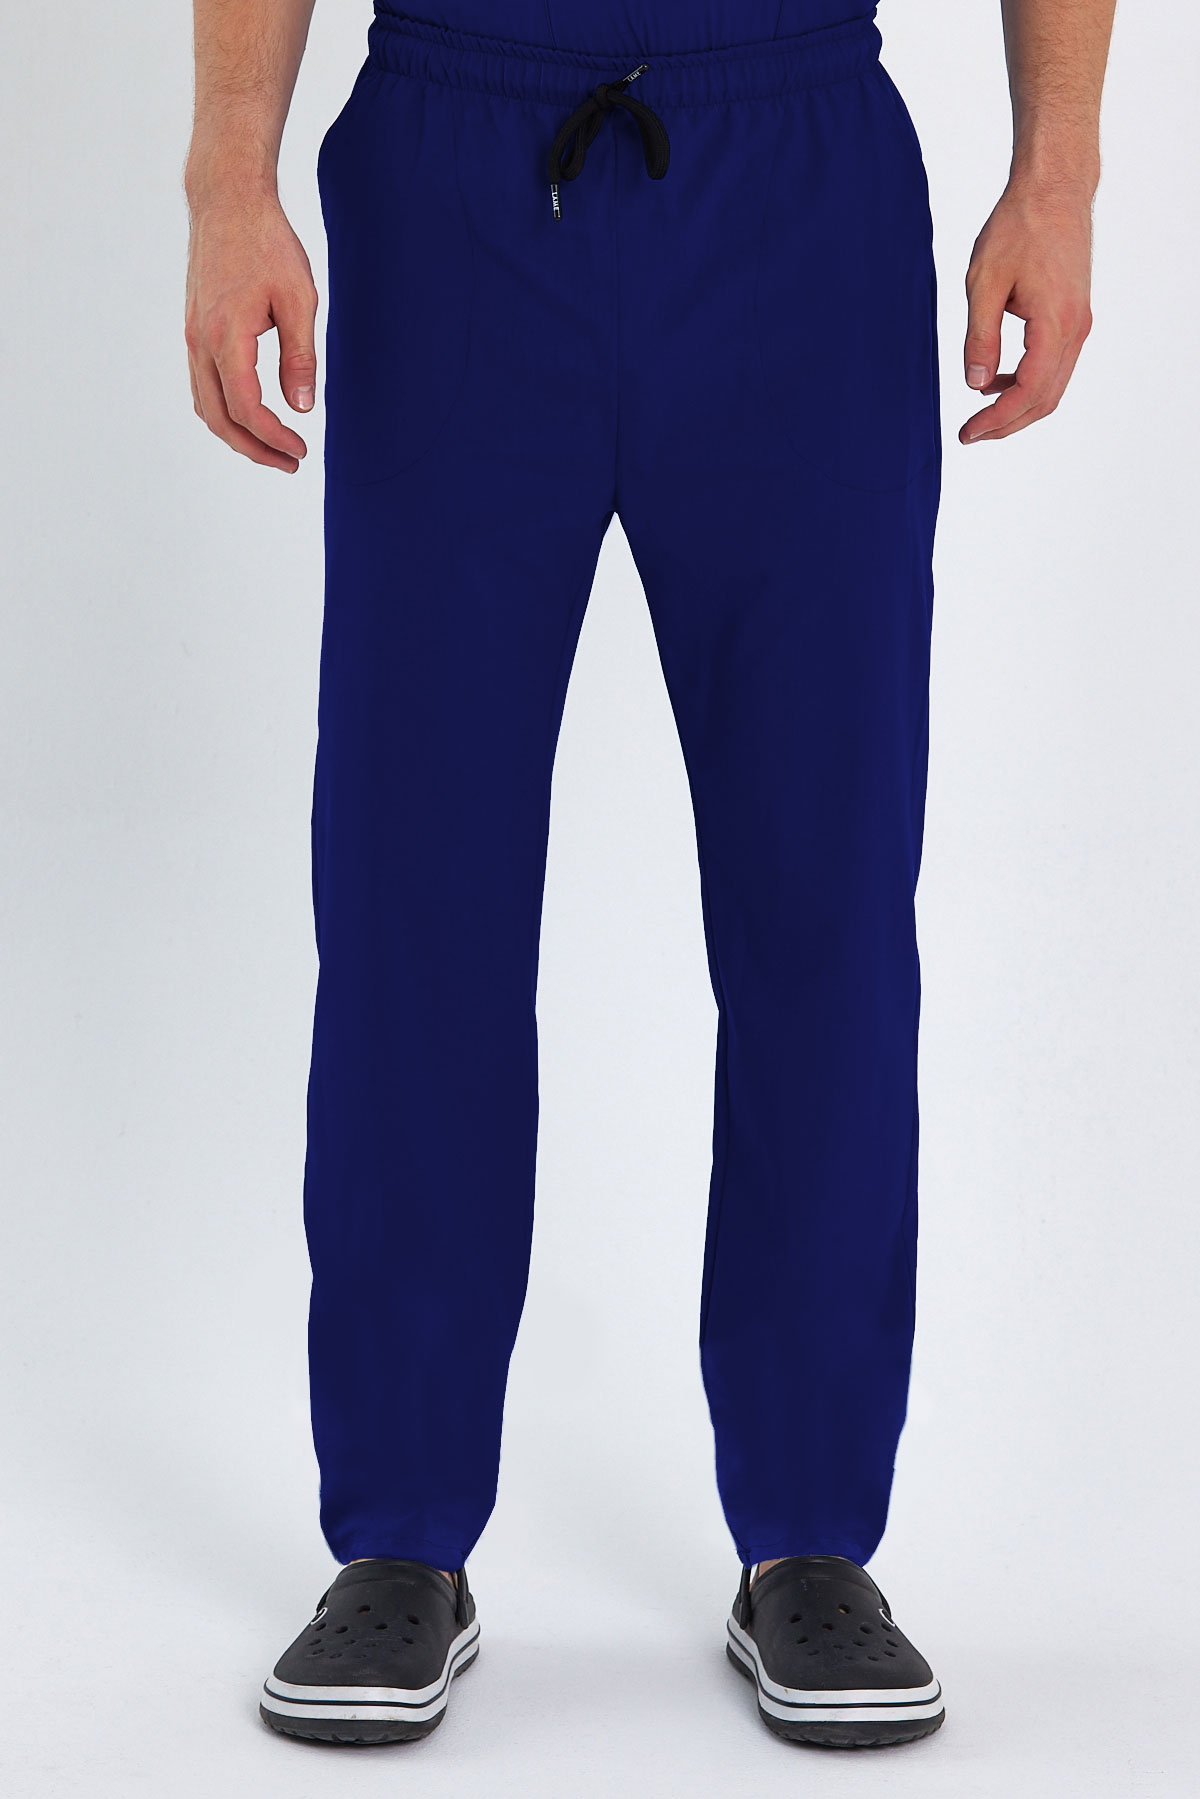 LAME 1009 Basic Likralı Saks Mavisi Scrubs, Hemşire Forması Klasik Paça Pantolon